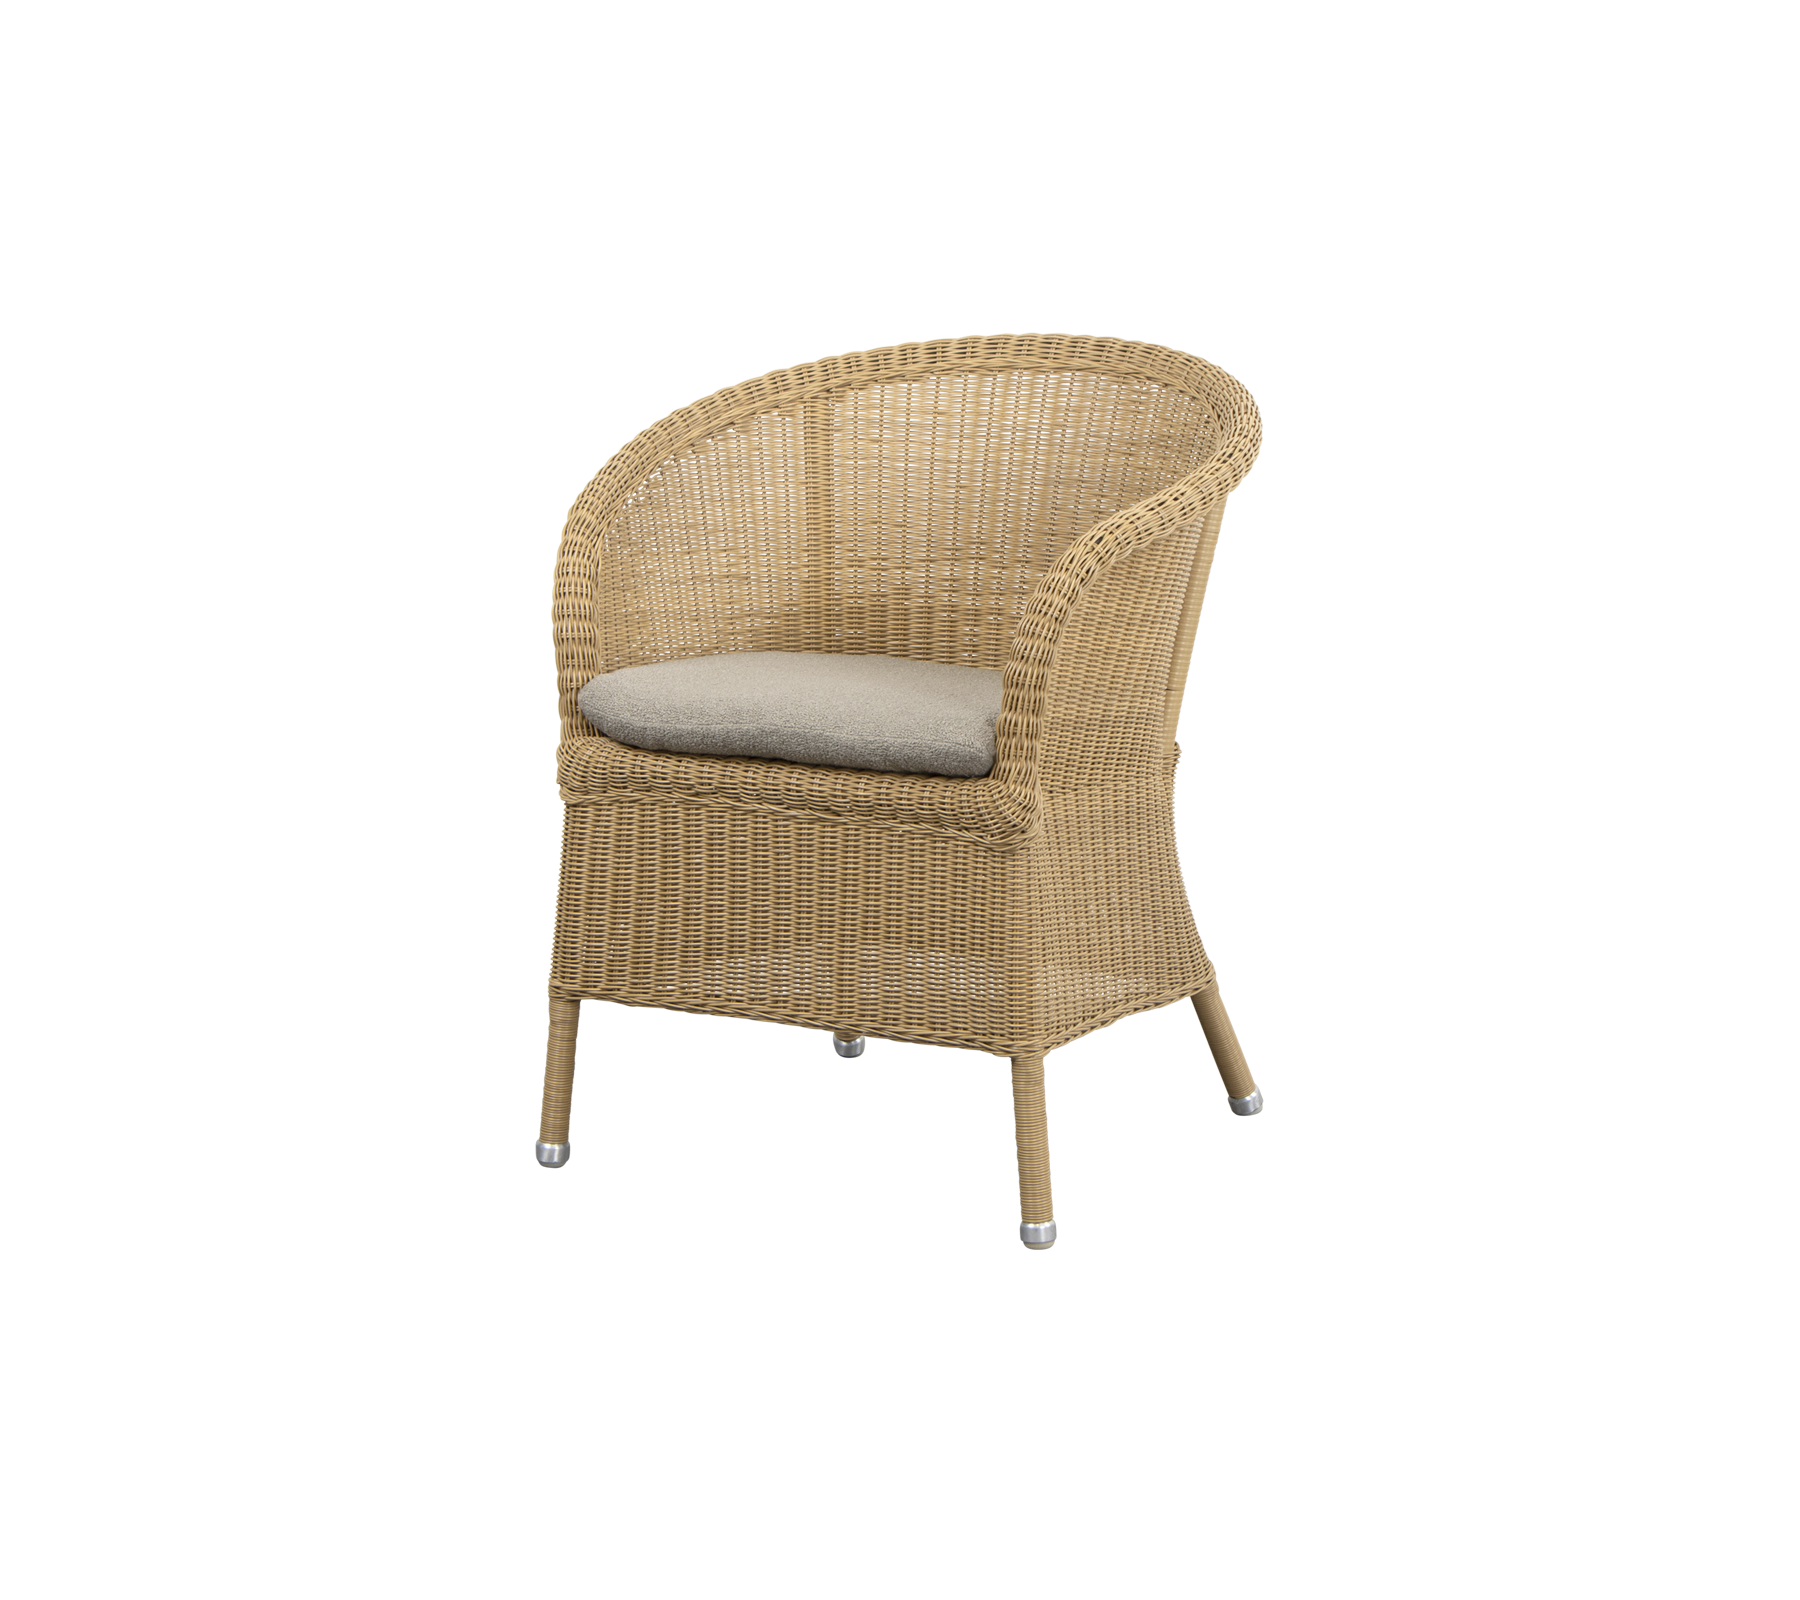 Seat cushion, Derby chair